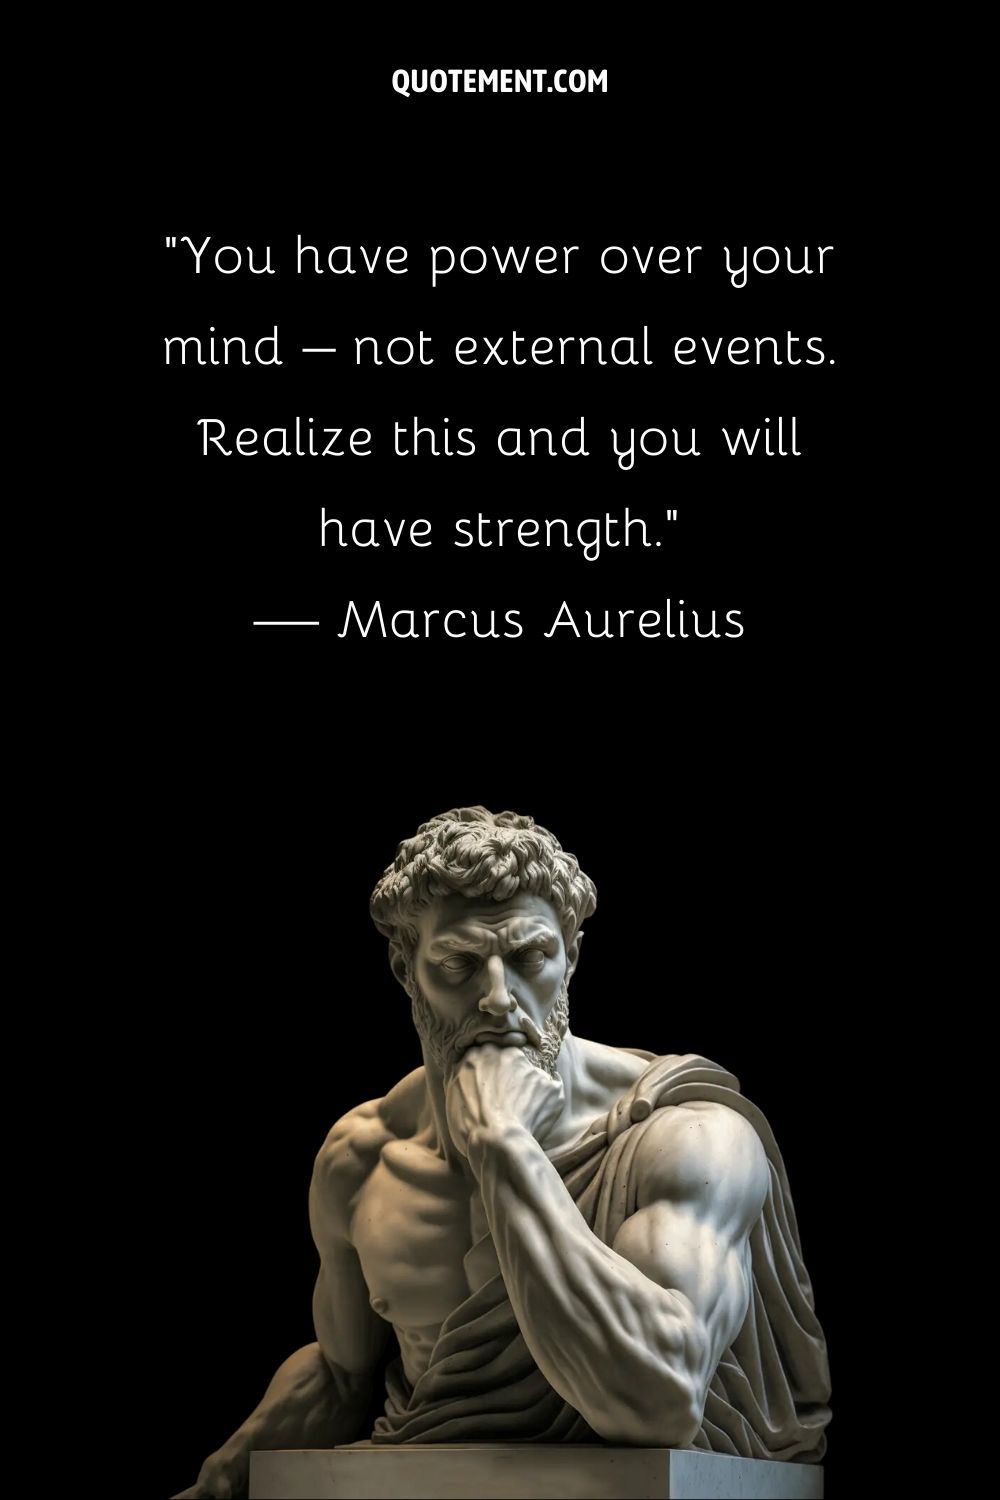 Stoic figure Marcus Aurelius in enduring contemplation